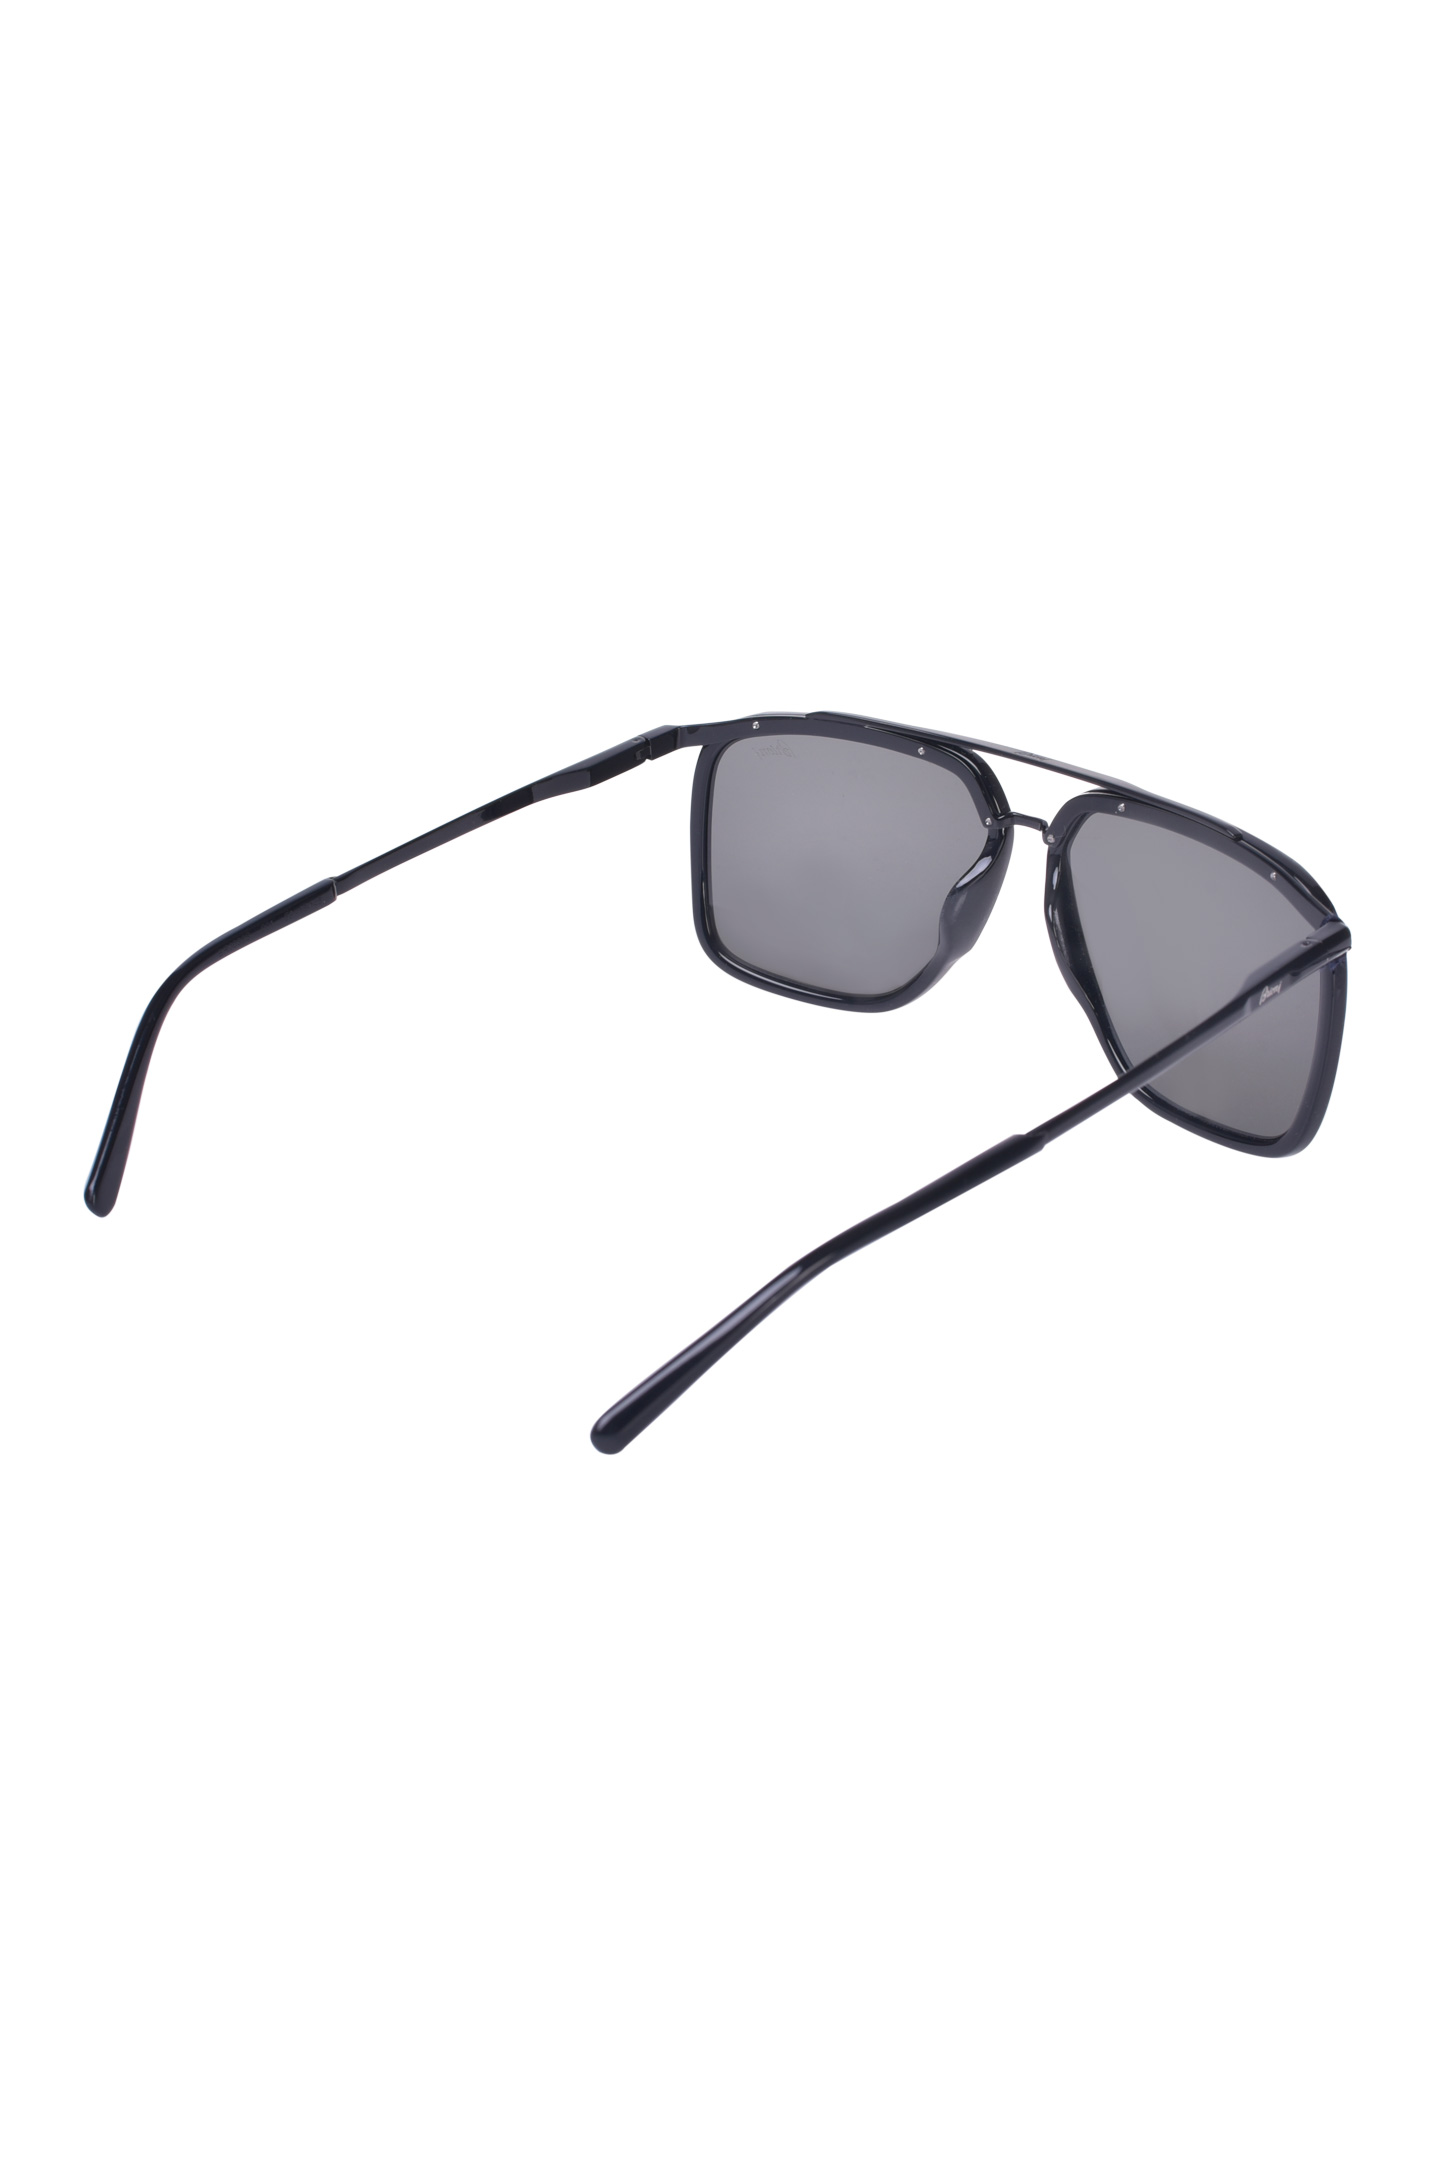 Солнцезащитные очки BRIONI ODC800 P3ZAC, цвет: Черный, Мужской